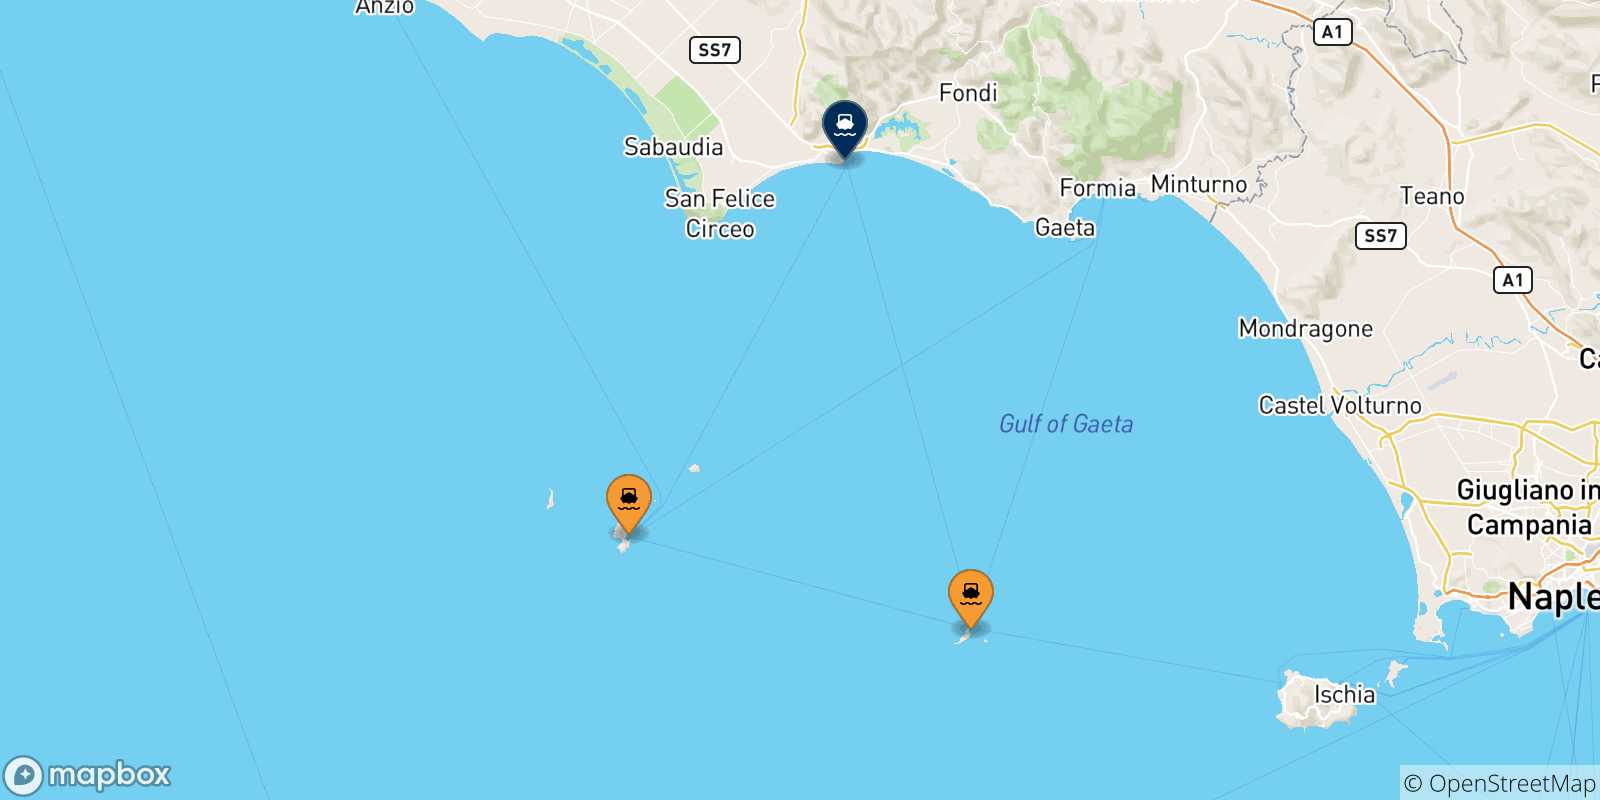 Mappa delle possibili rotte tra le Isole Pontine e Terracina